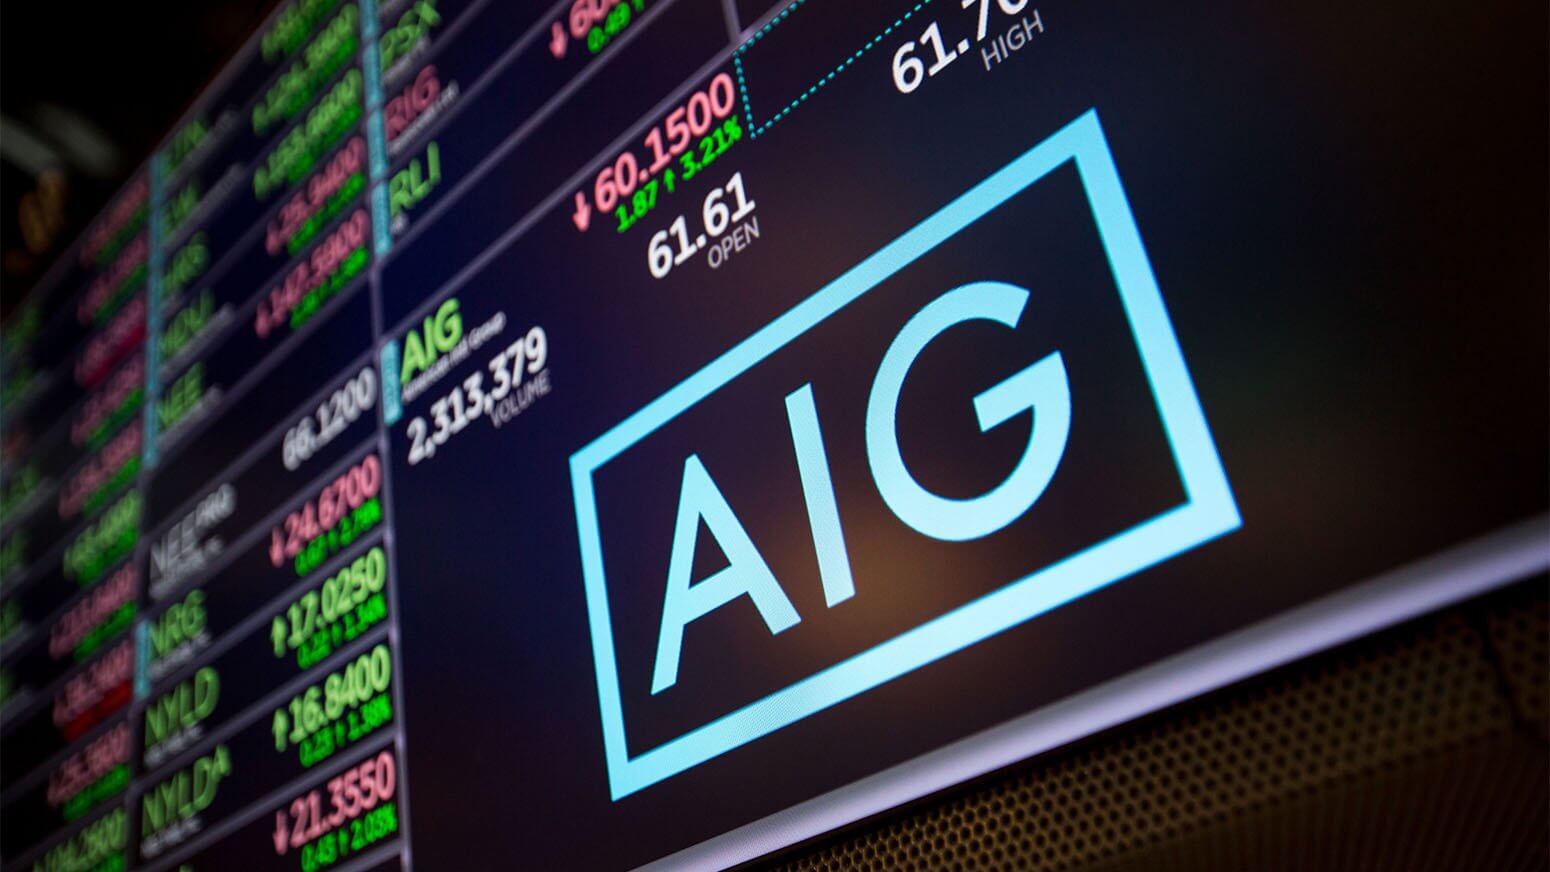 Η AIG ανακοίνωσε τα οικονομικά της αποτελέσματα για το 3ο τρίμηνο